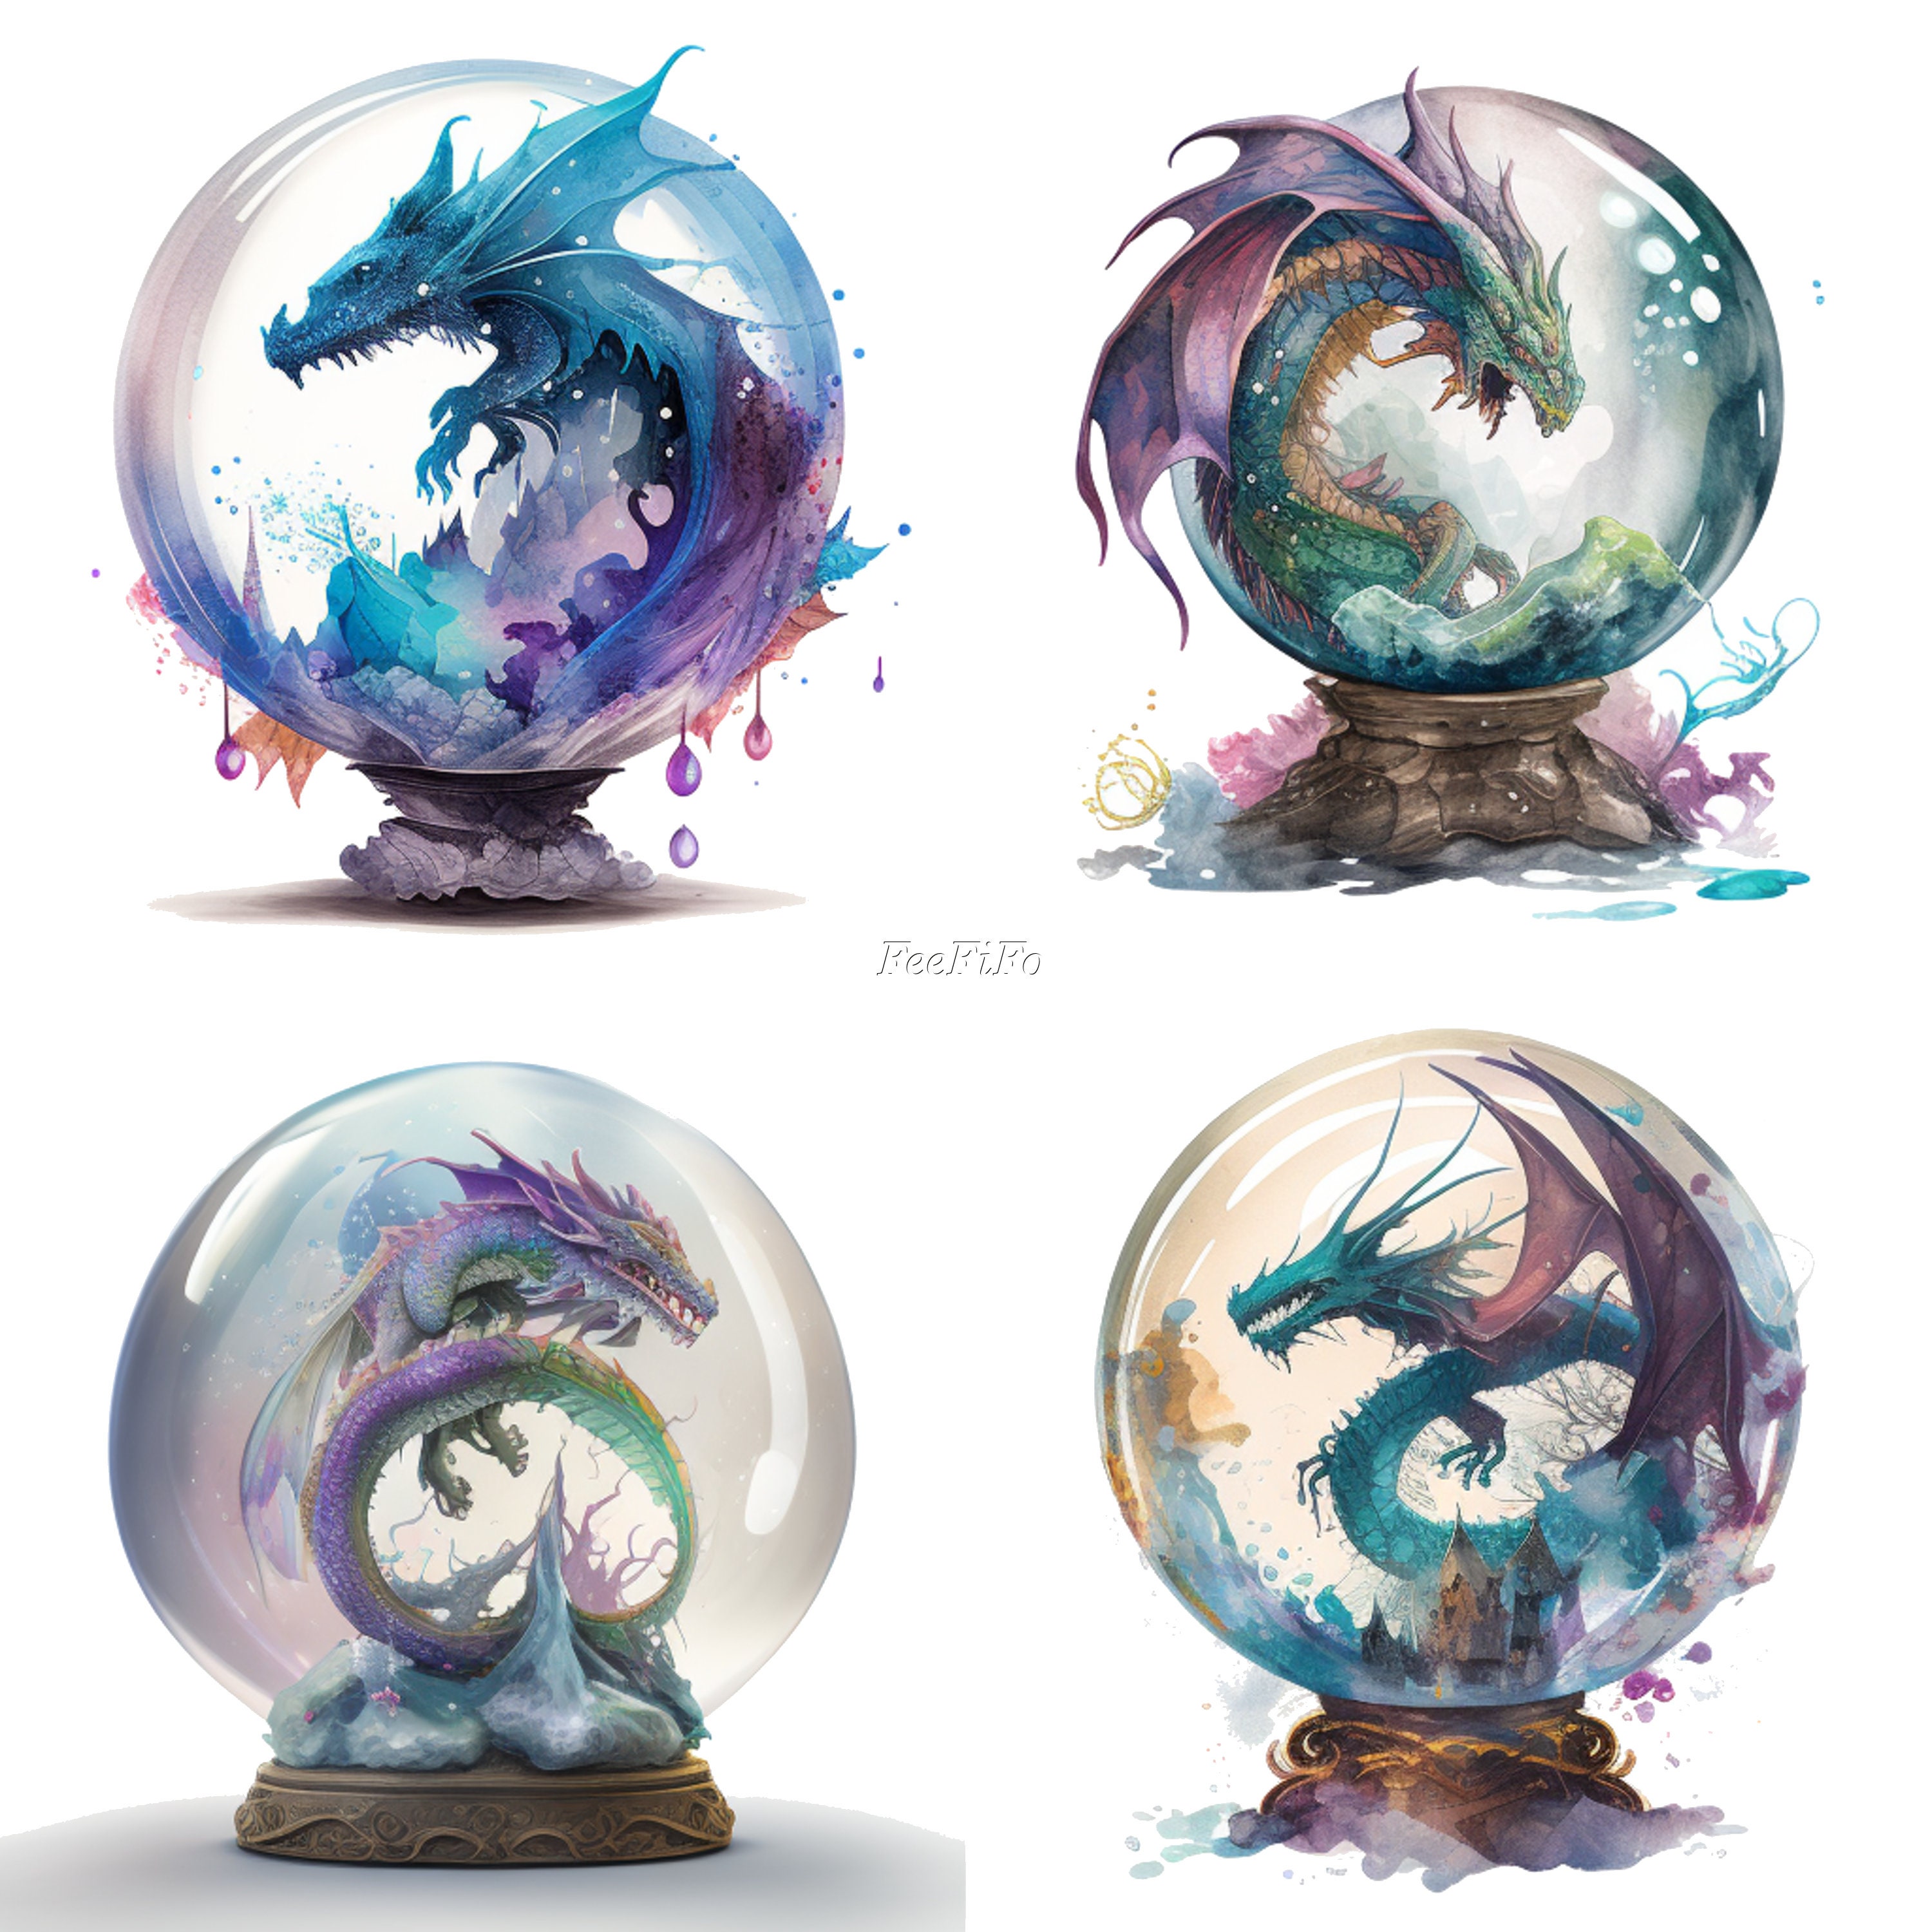 sfere del drago di cristallo in vendita Cina Crystal Dragon Ball